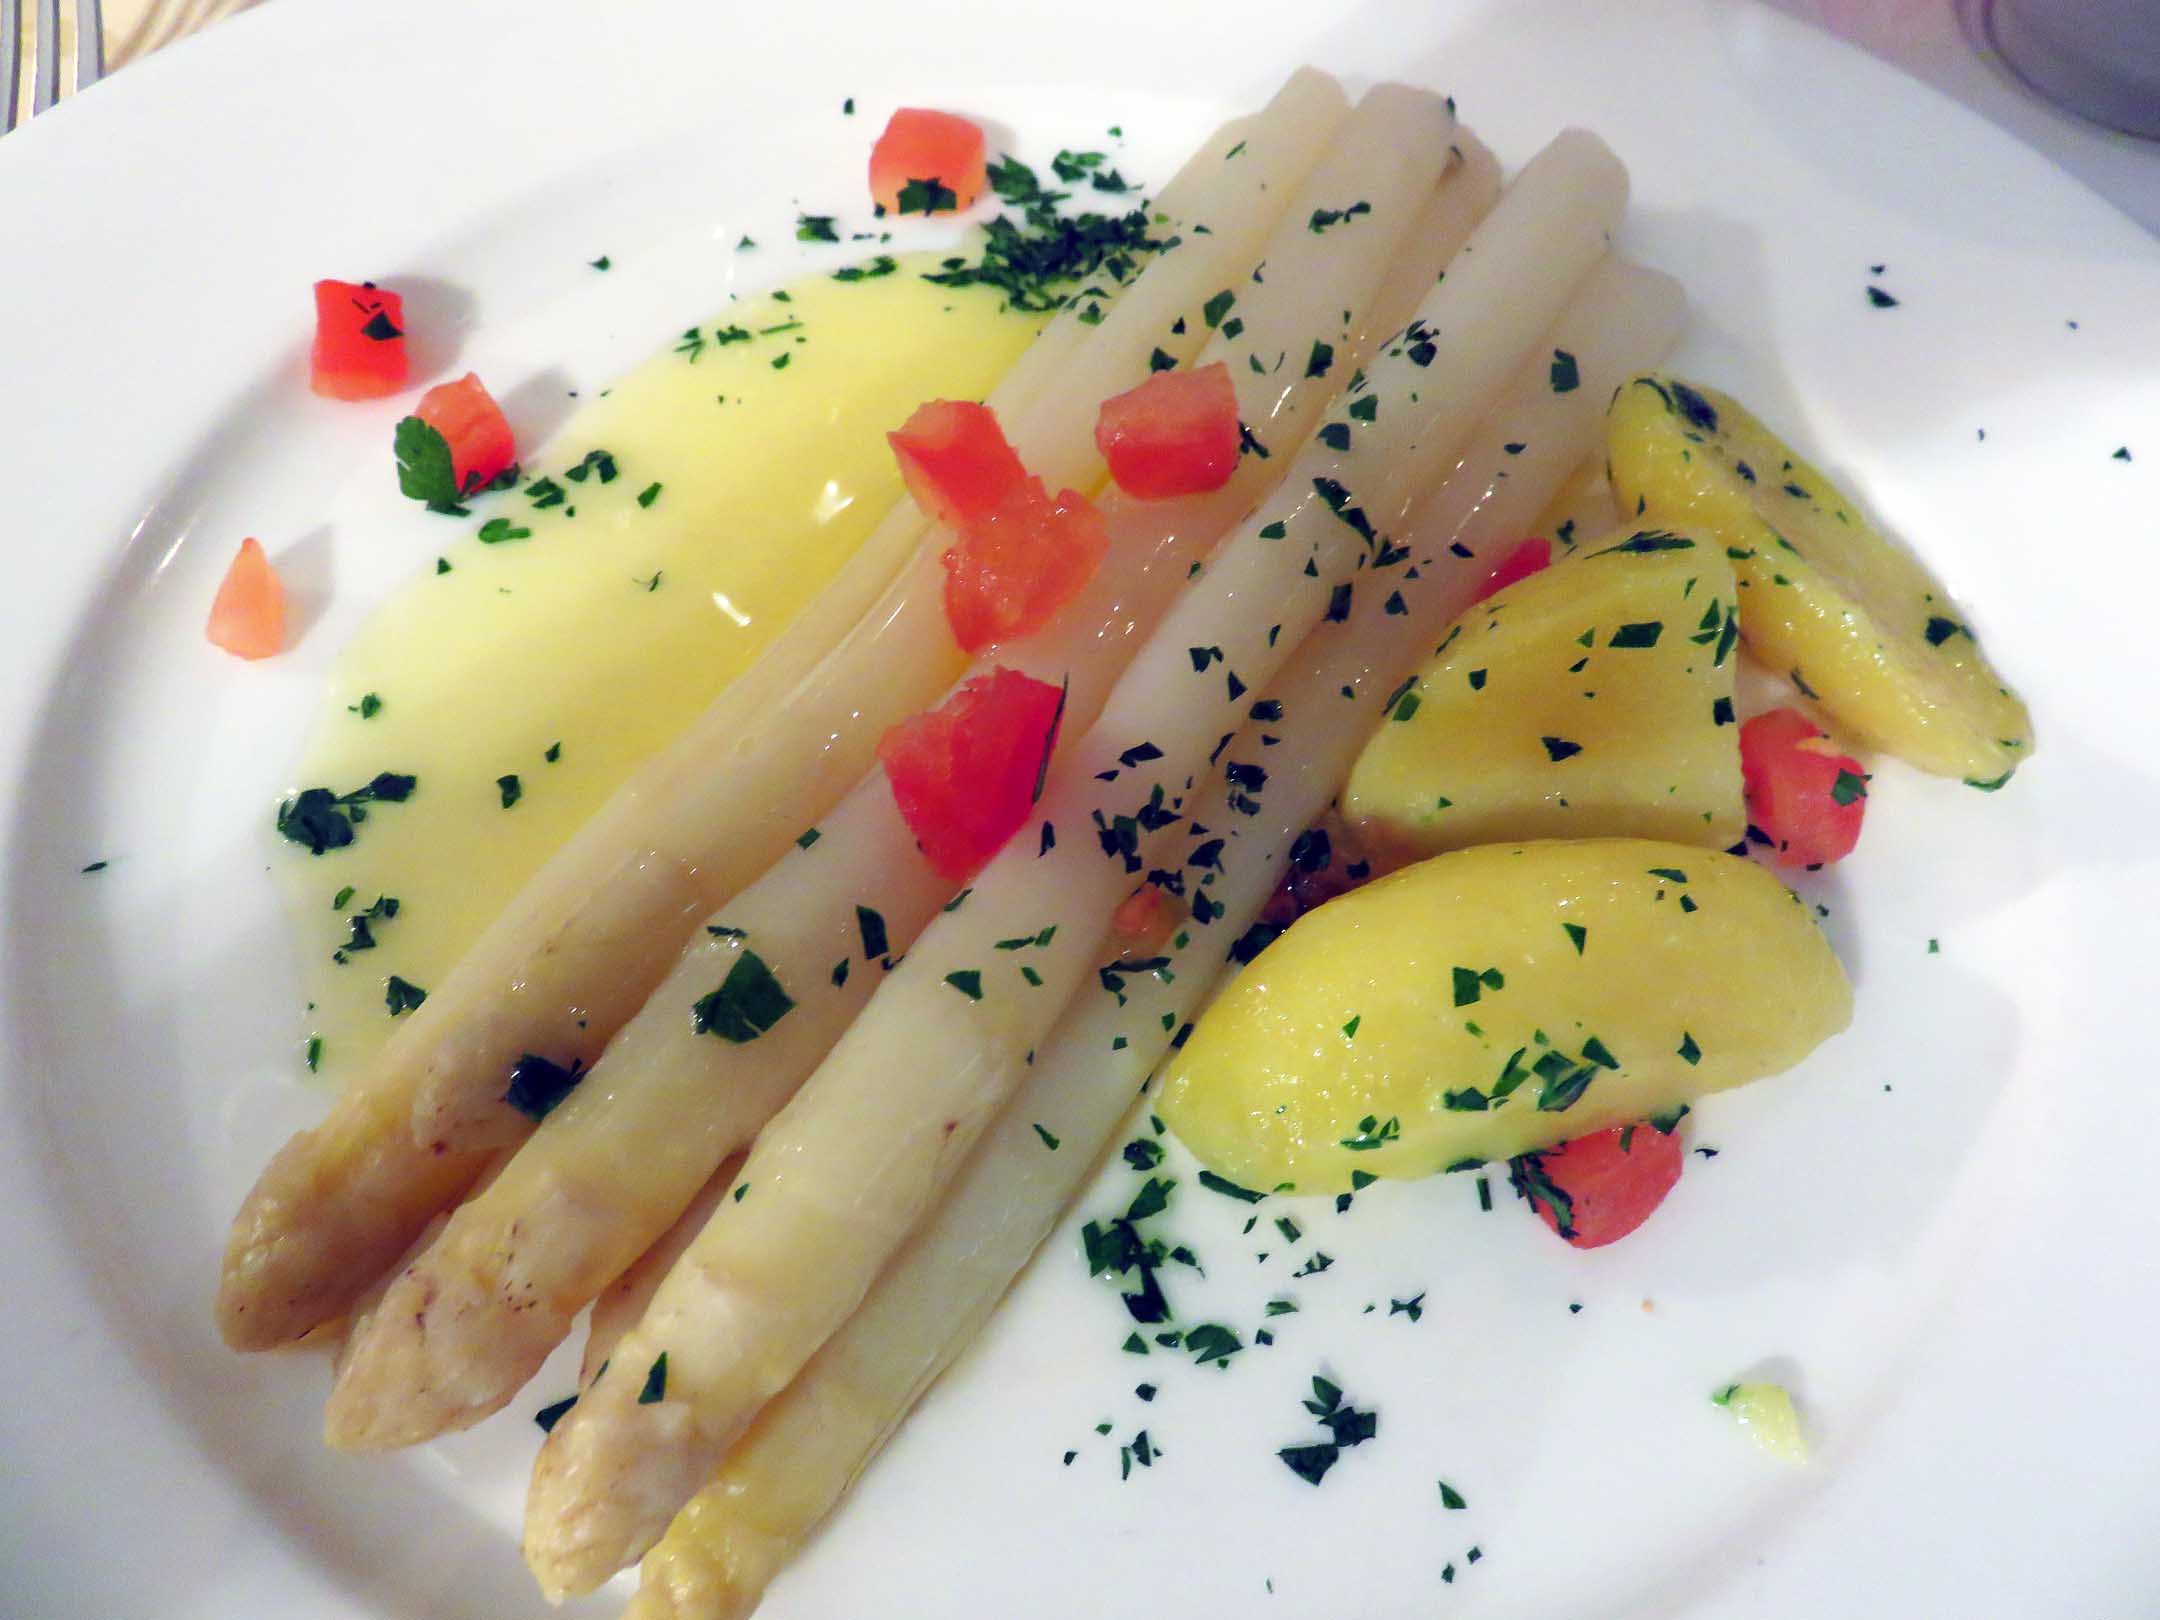 3. White asparagus